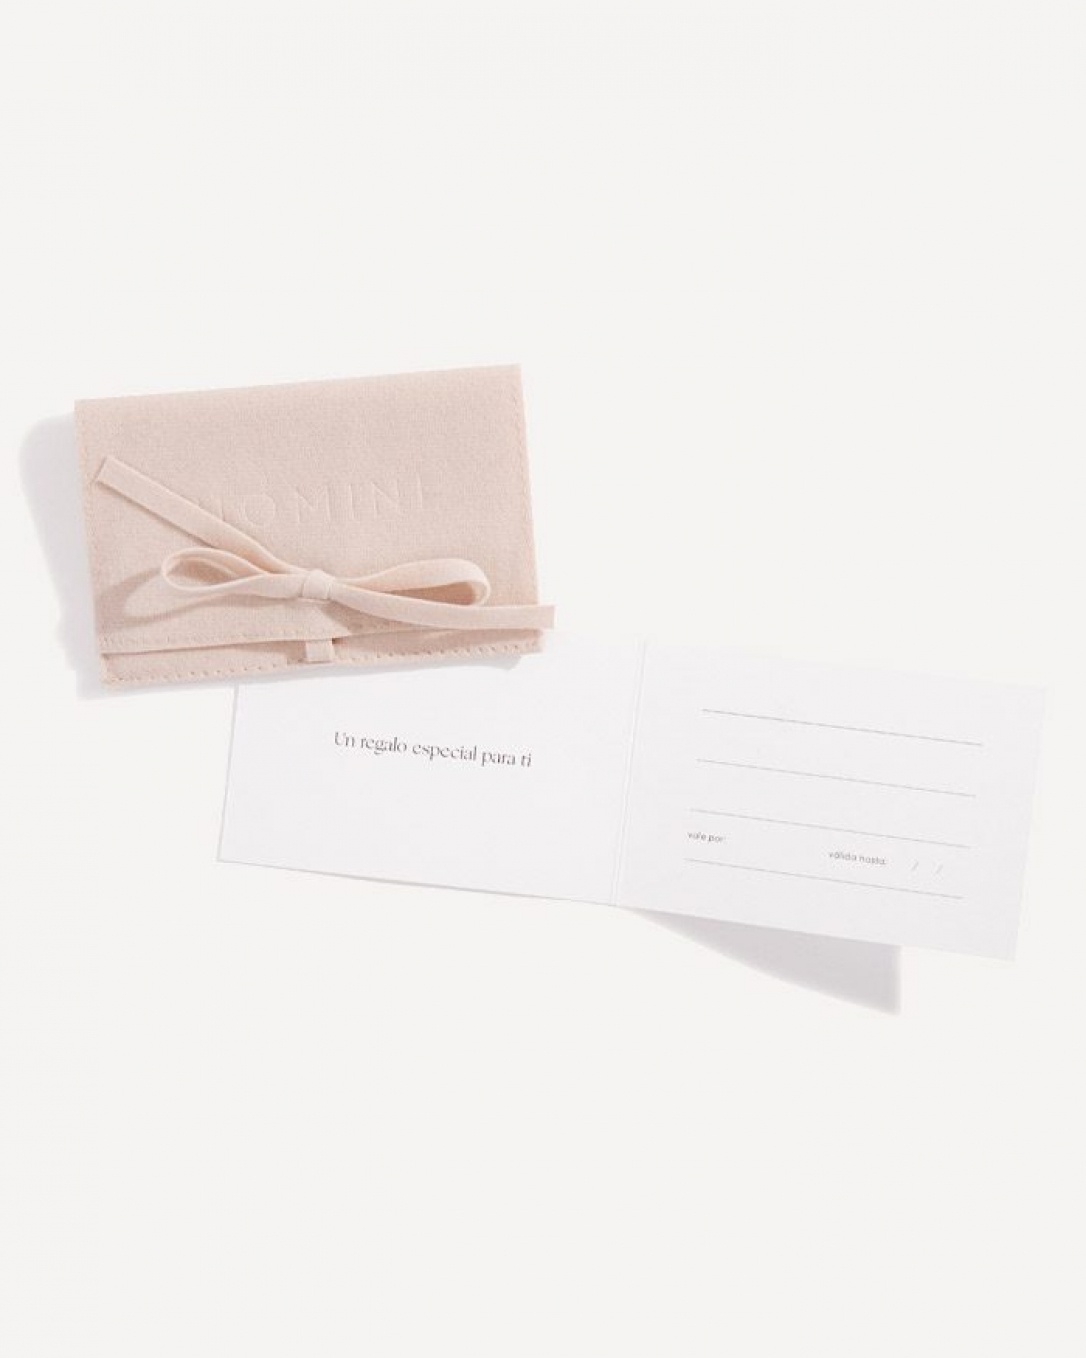 gift card, de papel texturado mate, sobre de terciopelo,  homini studio